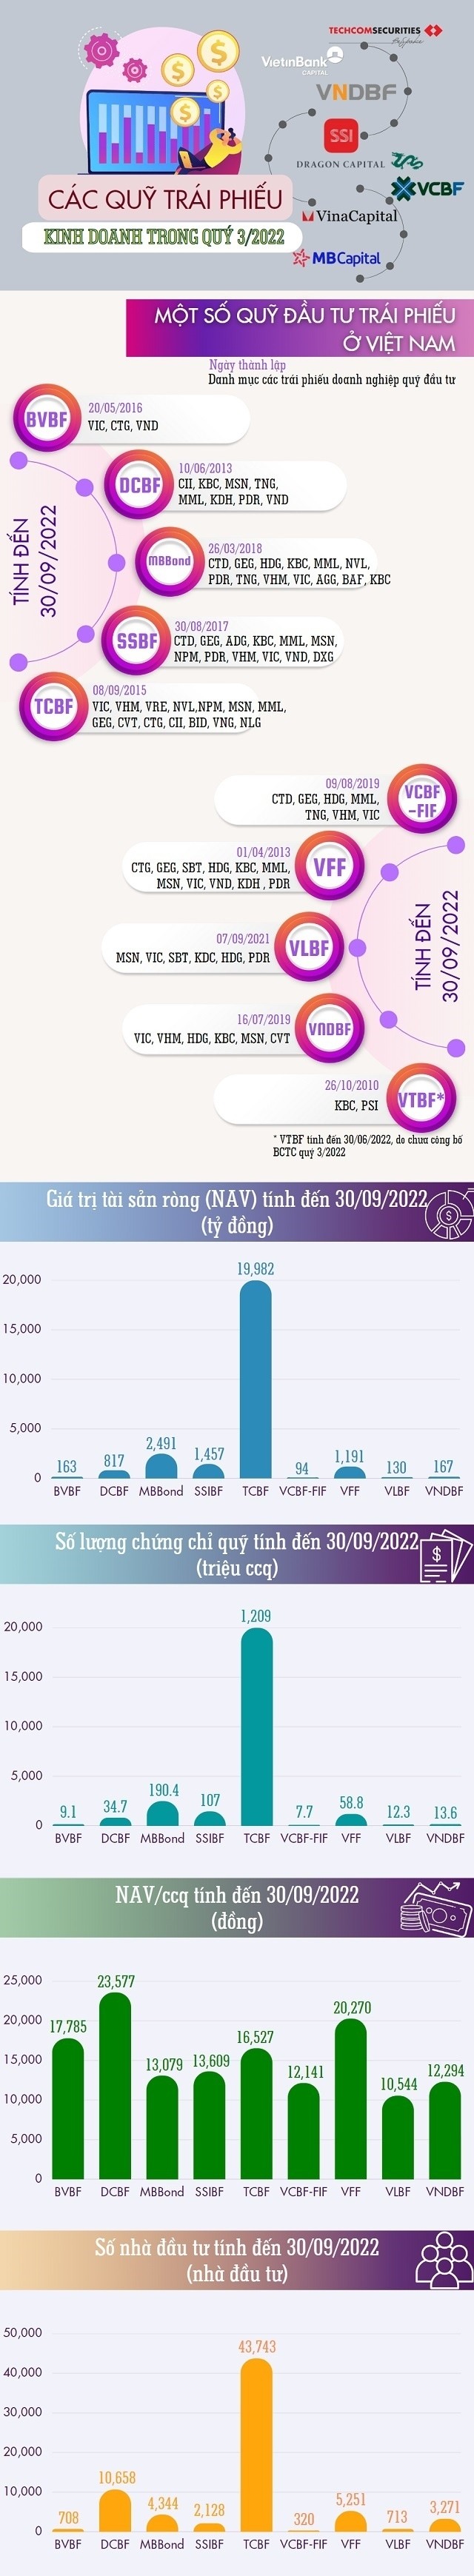 Các quỹ trái phiếu ở Việt Nam kinh doanh ra sao trong quý 3/2022